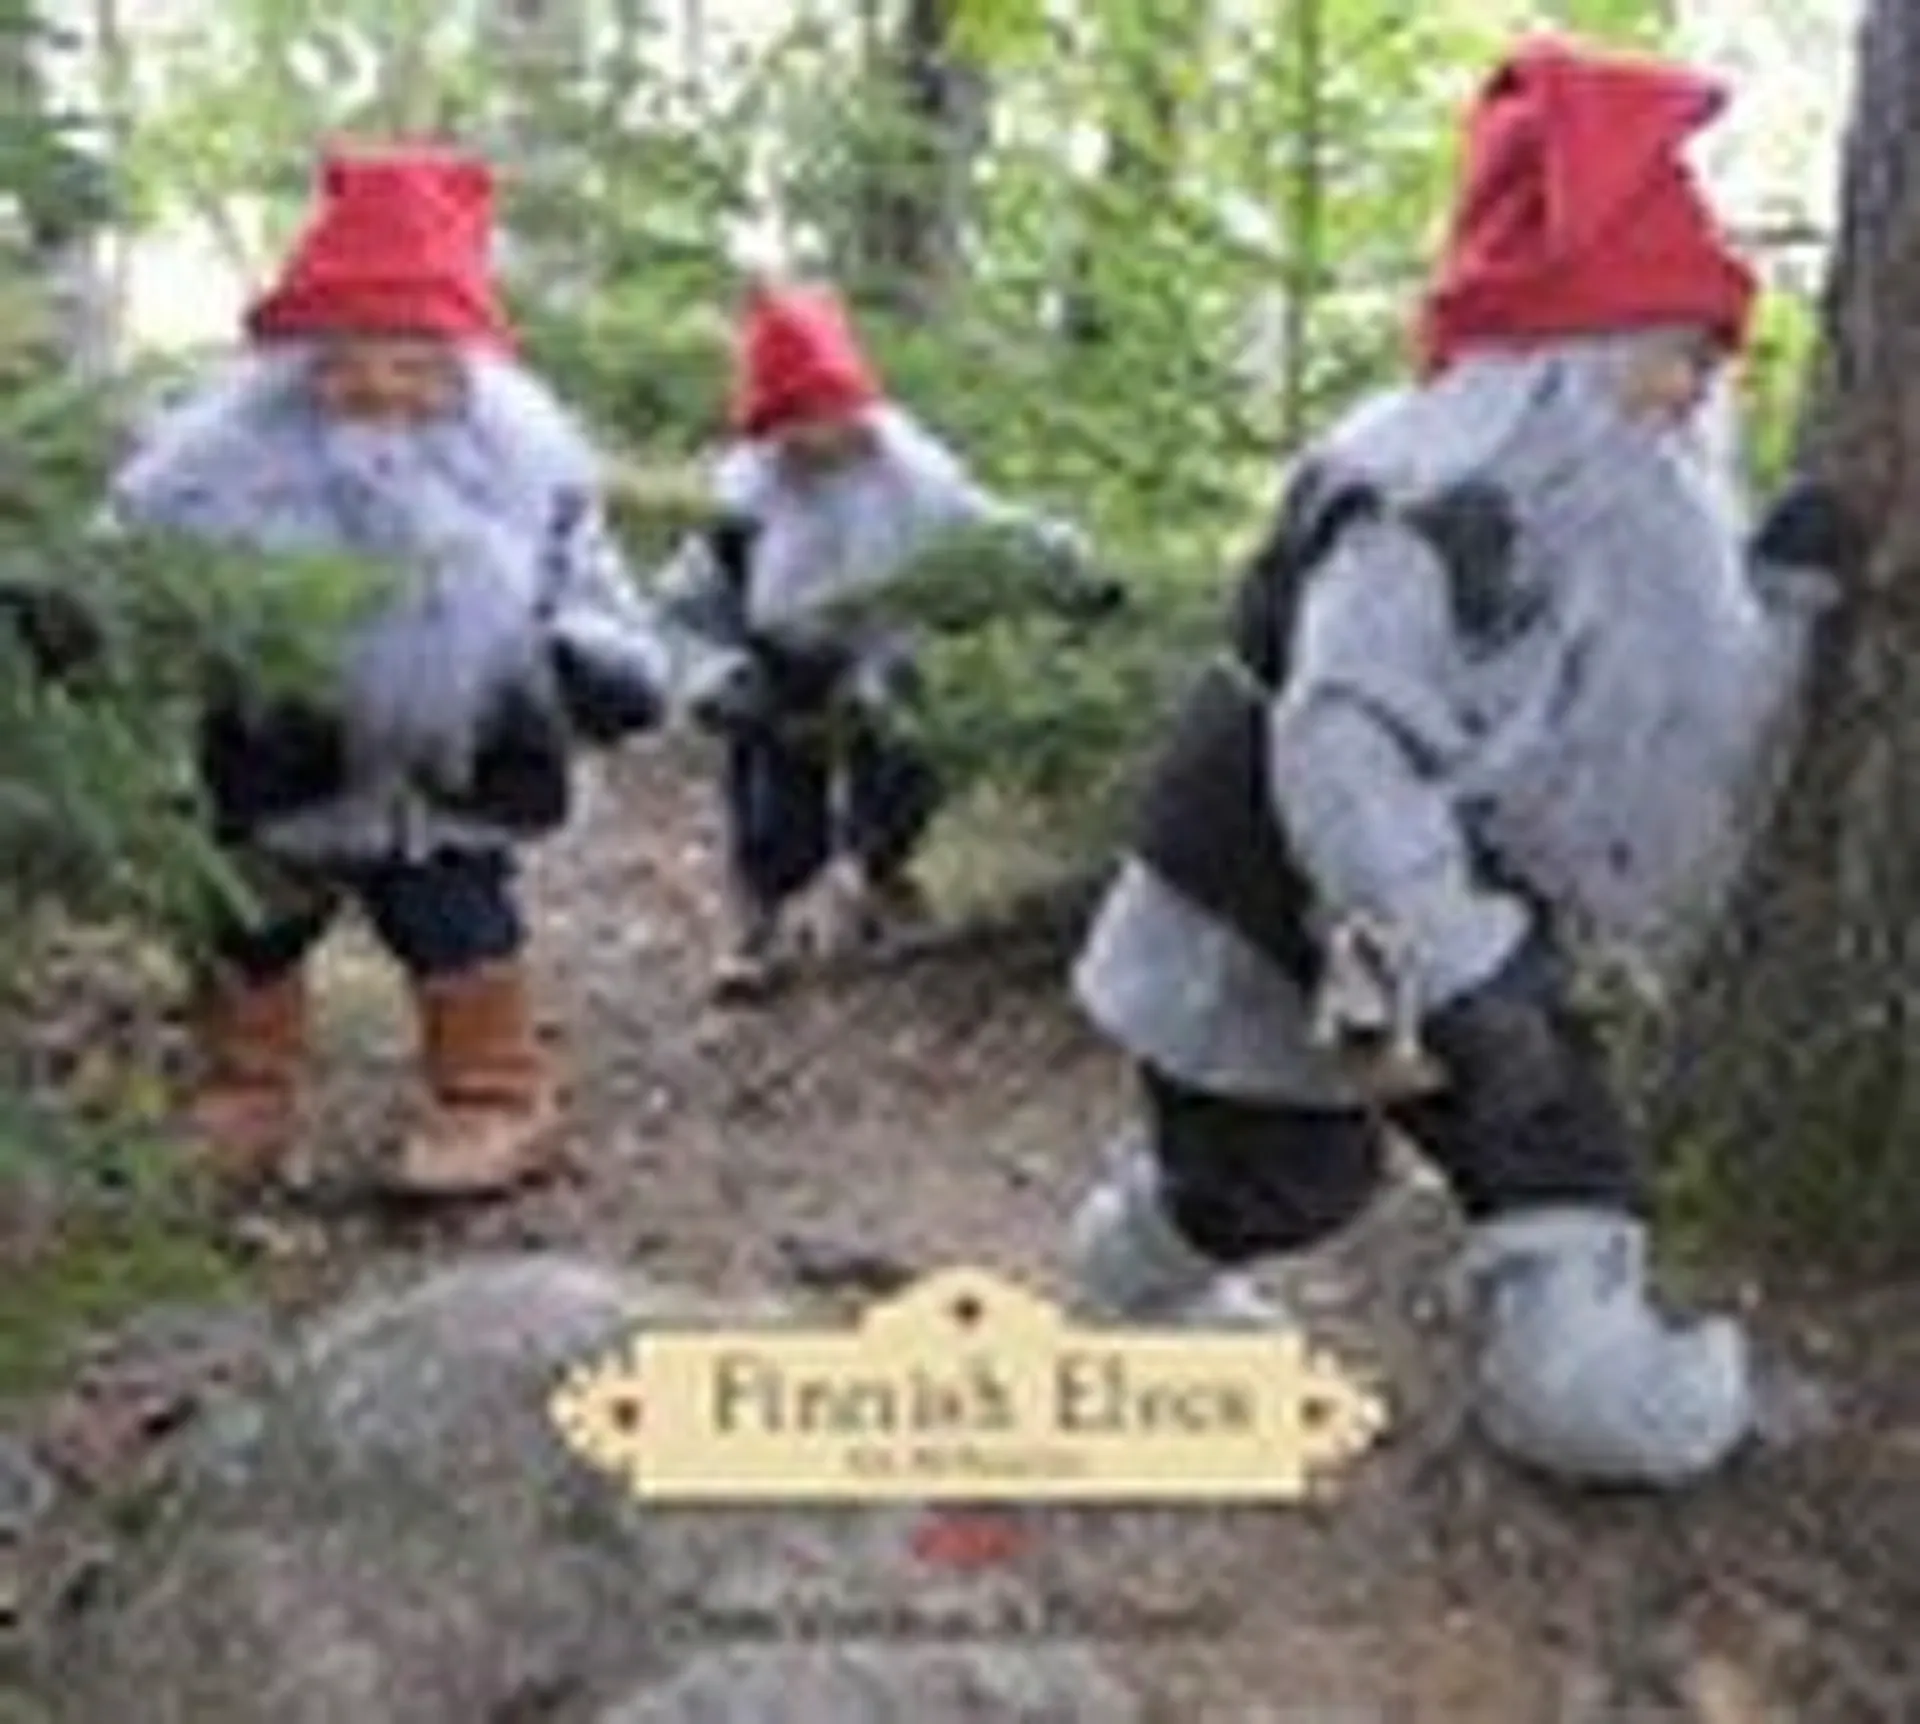 Finnish Elves for All Seasons